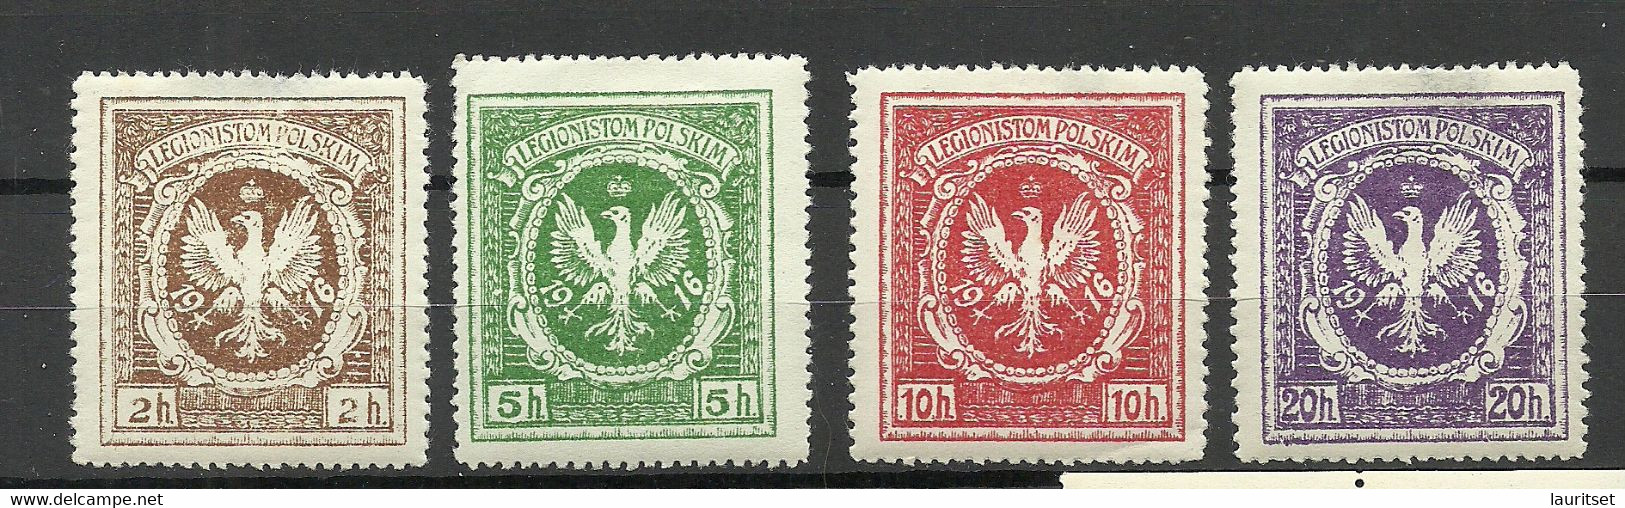 POLEN Poland 1916 Legionistam Polskim Für Polnische Legionäre Legion, 4 Stamps * - Neufs